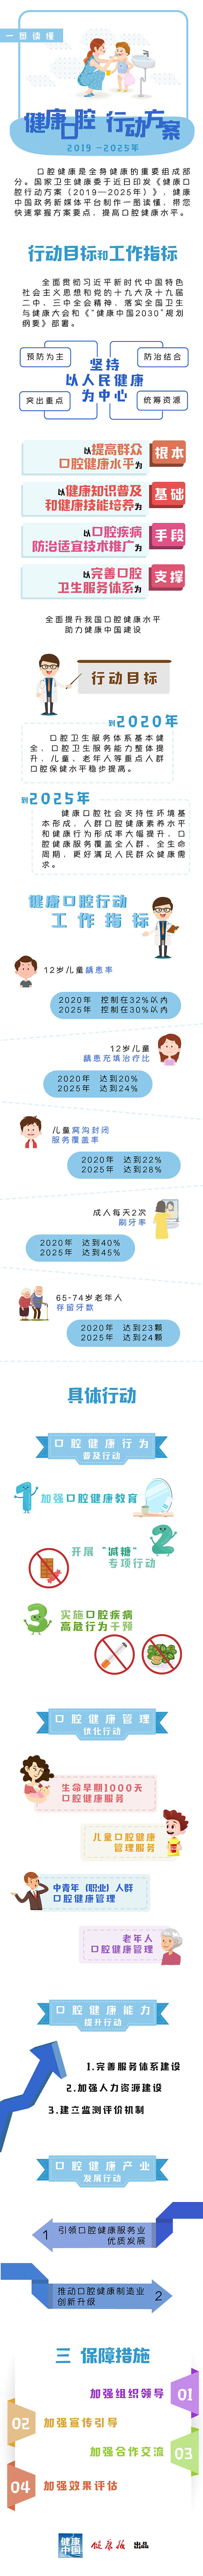 健康口腔行动方案（2019-2025年）